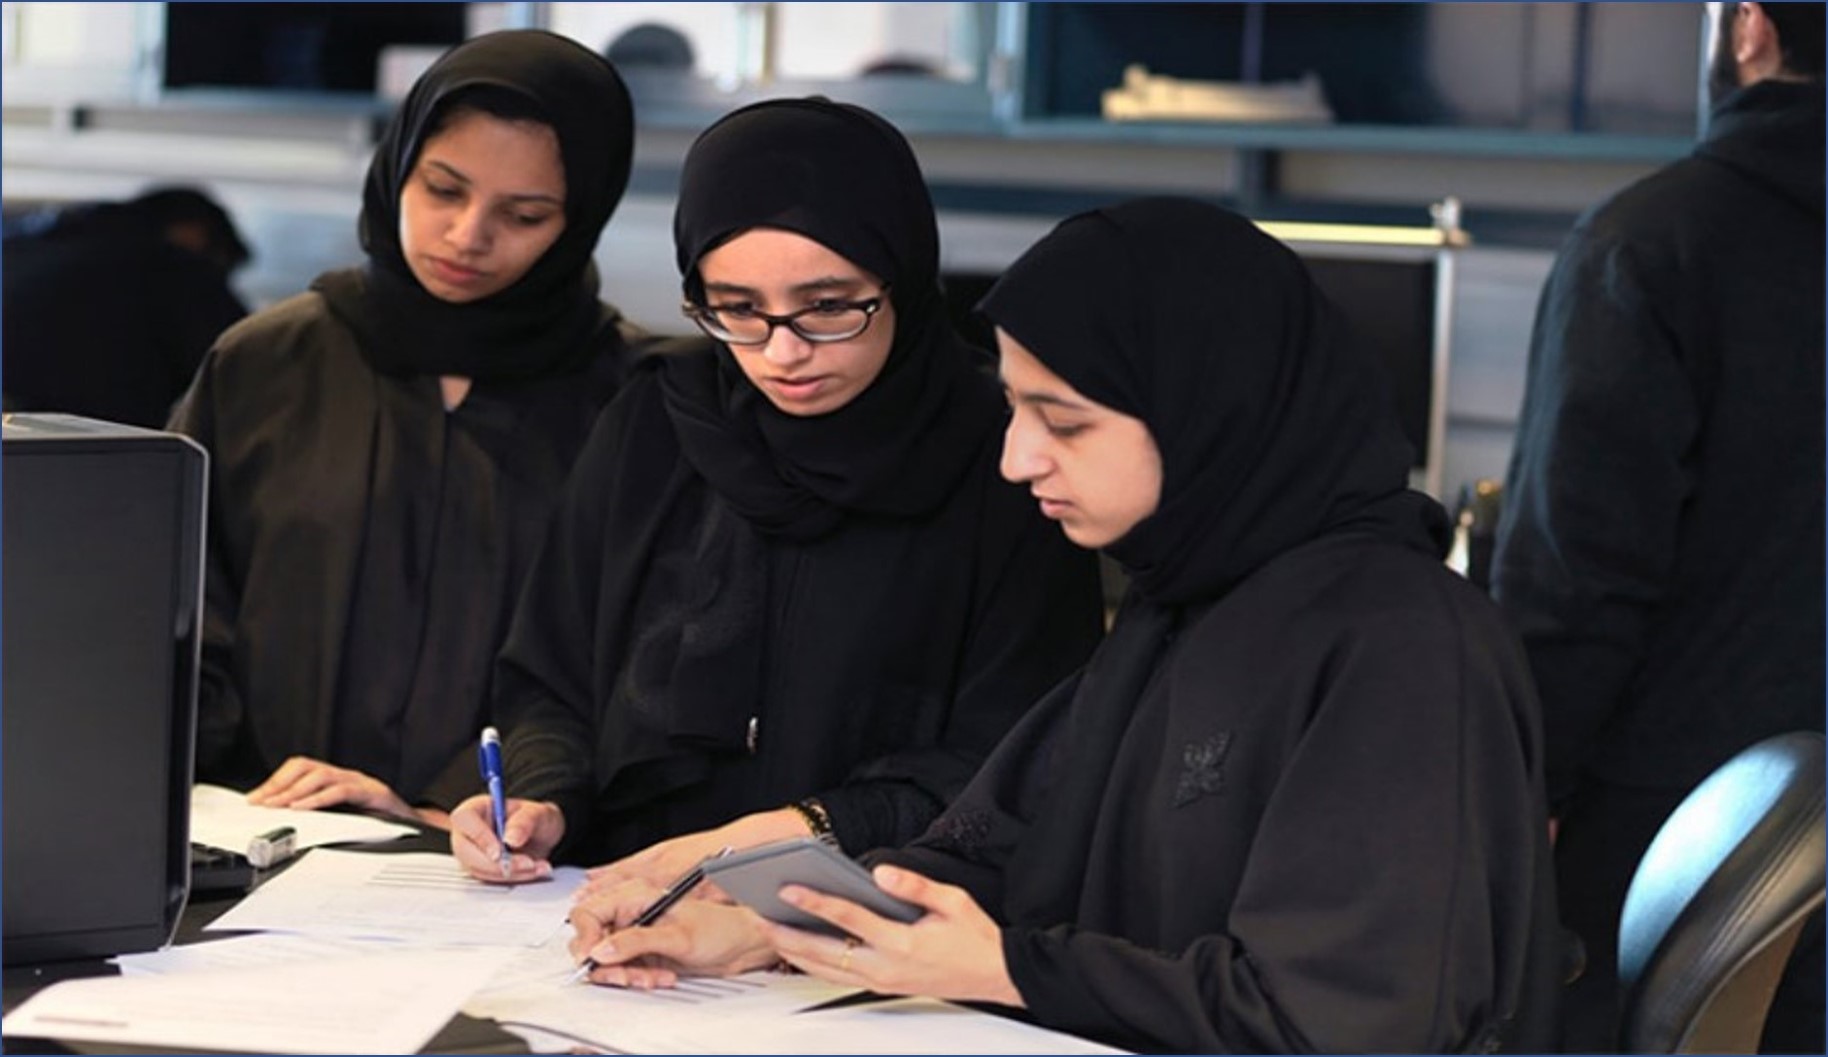 وظائف شاغرة في كبري الشركات من داخل الكويت للنساء فقط